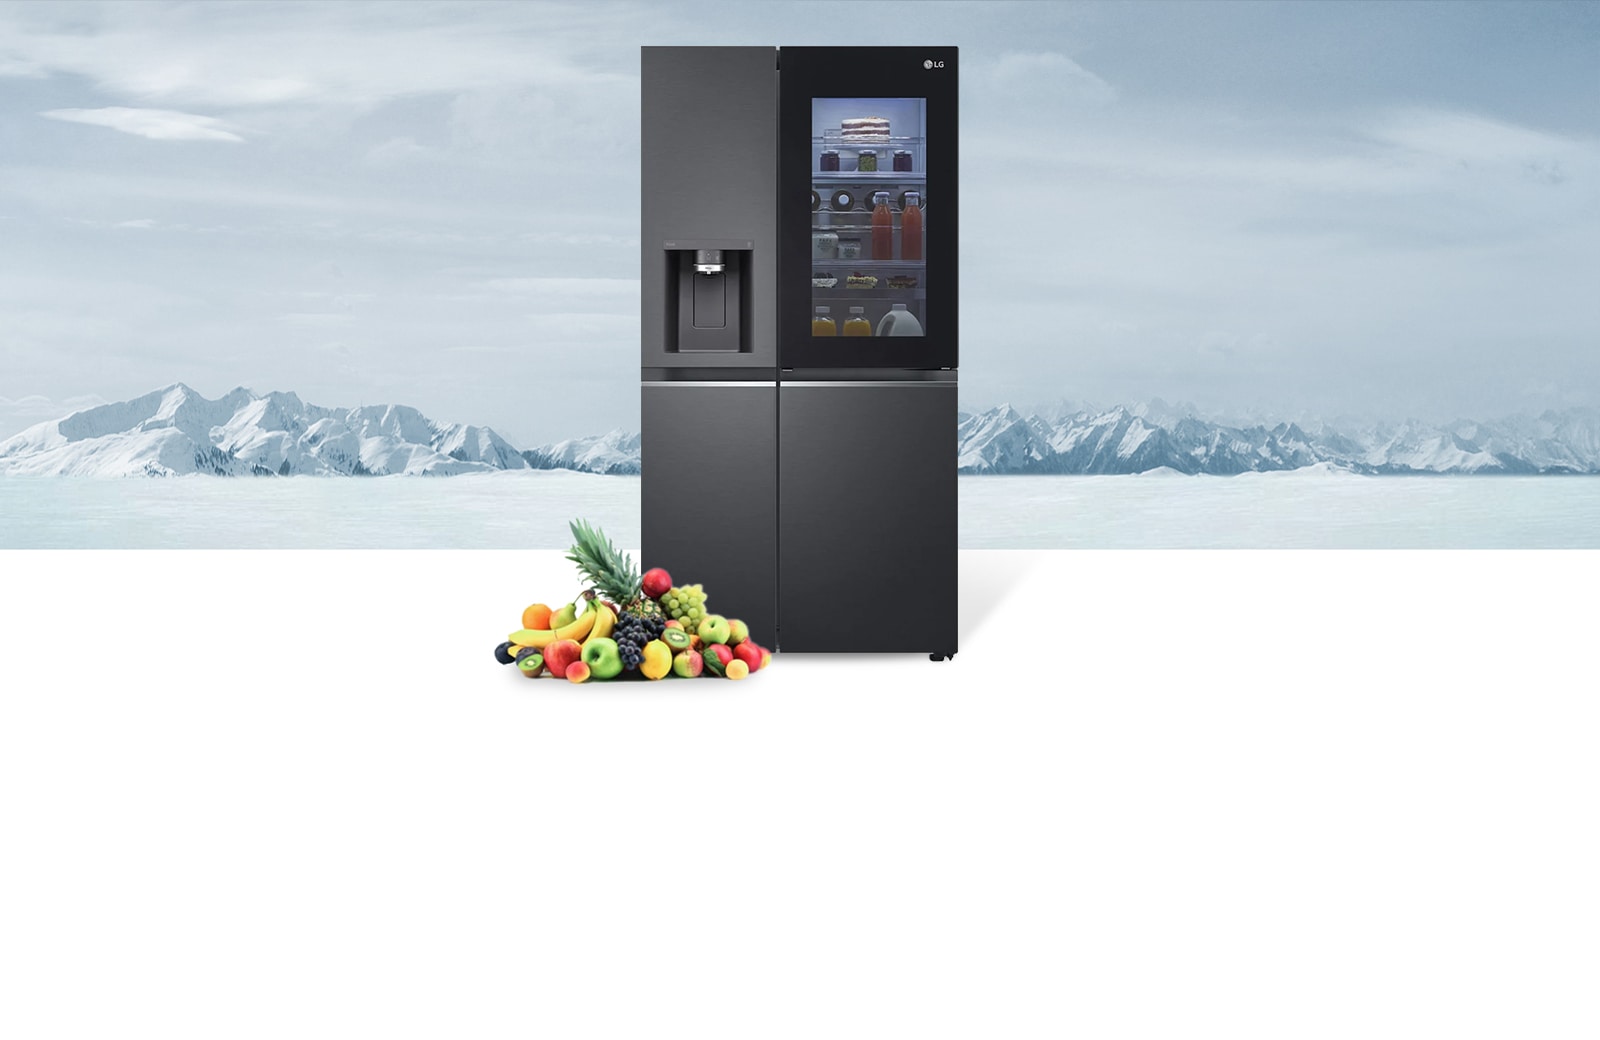 Hình ảnh tủ lạnh và trái cây ở phía trước hình nền Bắc Cực.